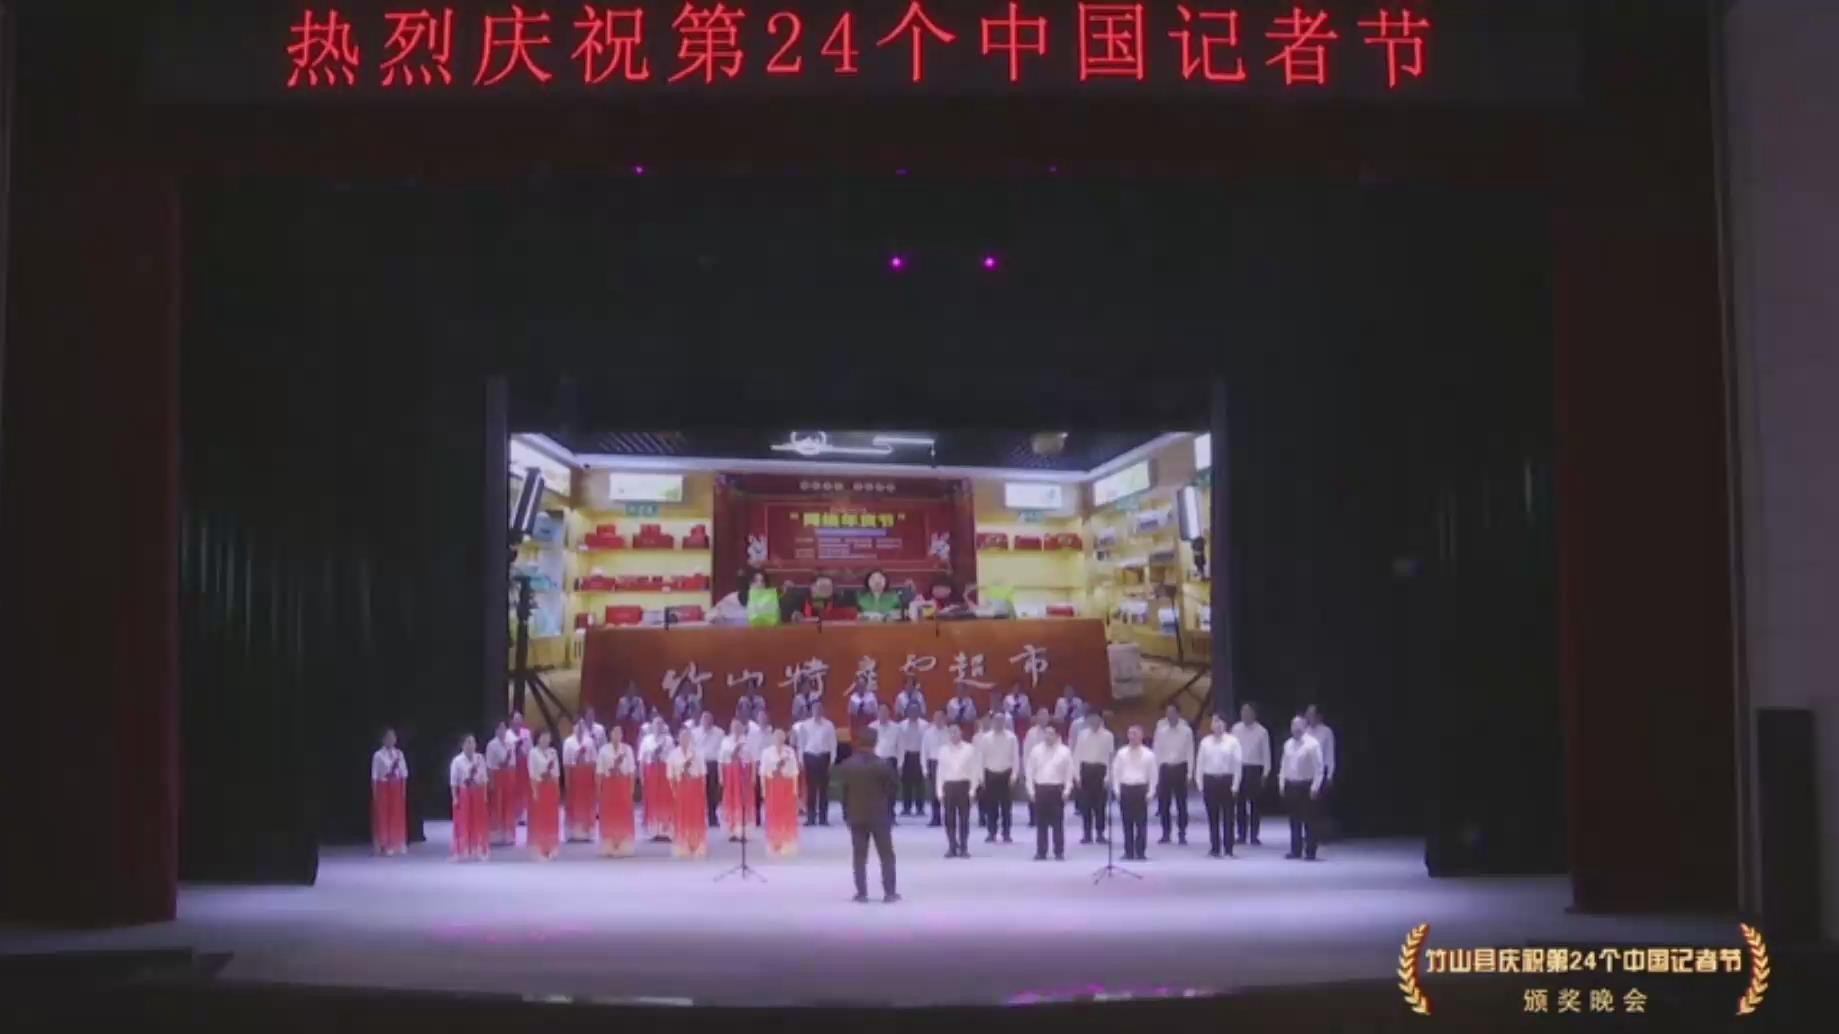 竹山县庆祝第24个中国记者节颁奖晚会